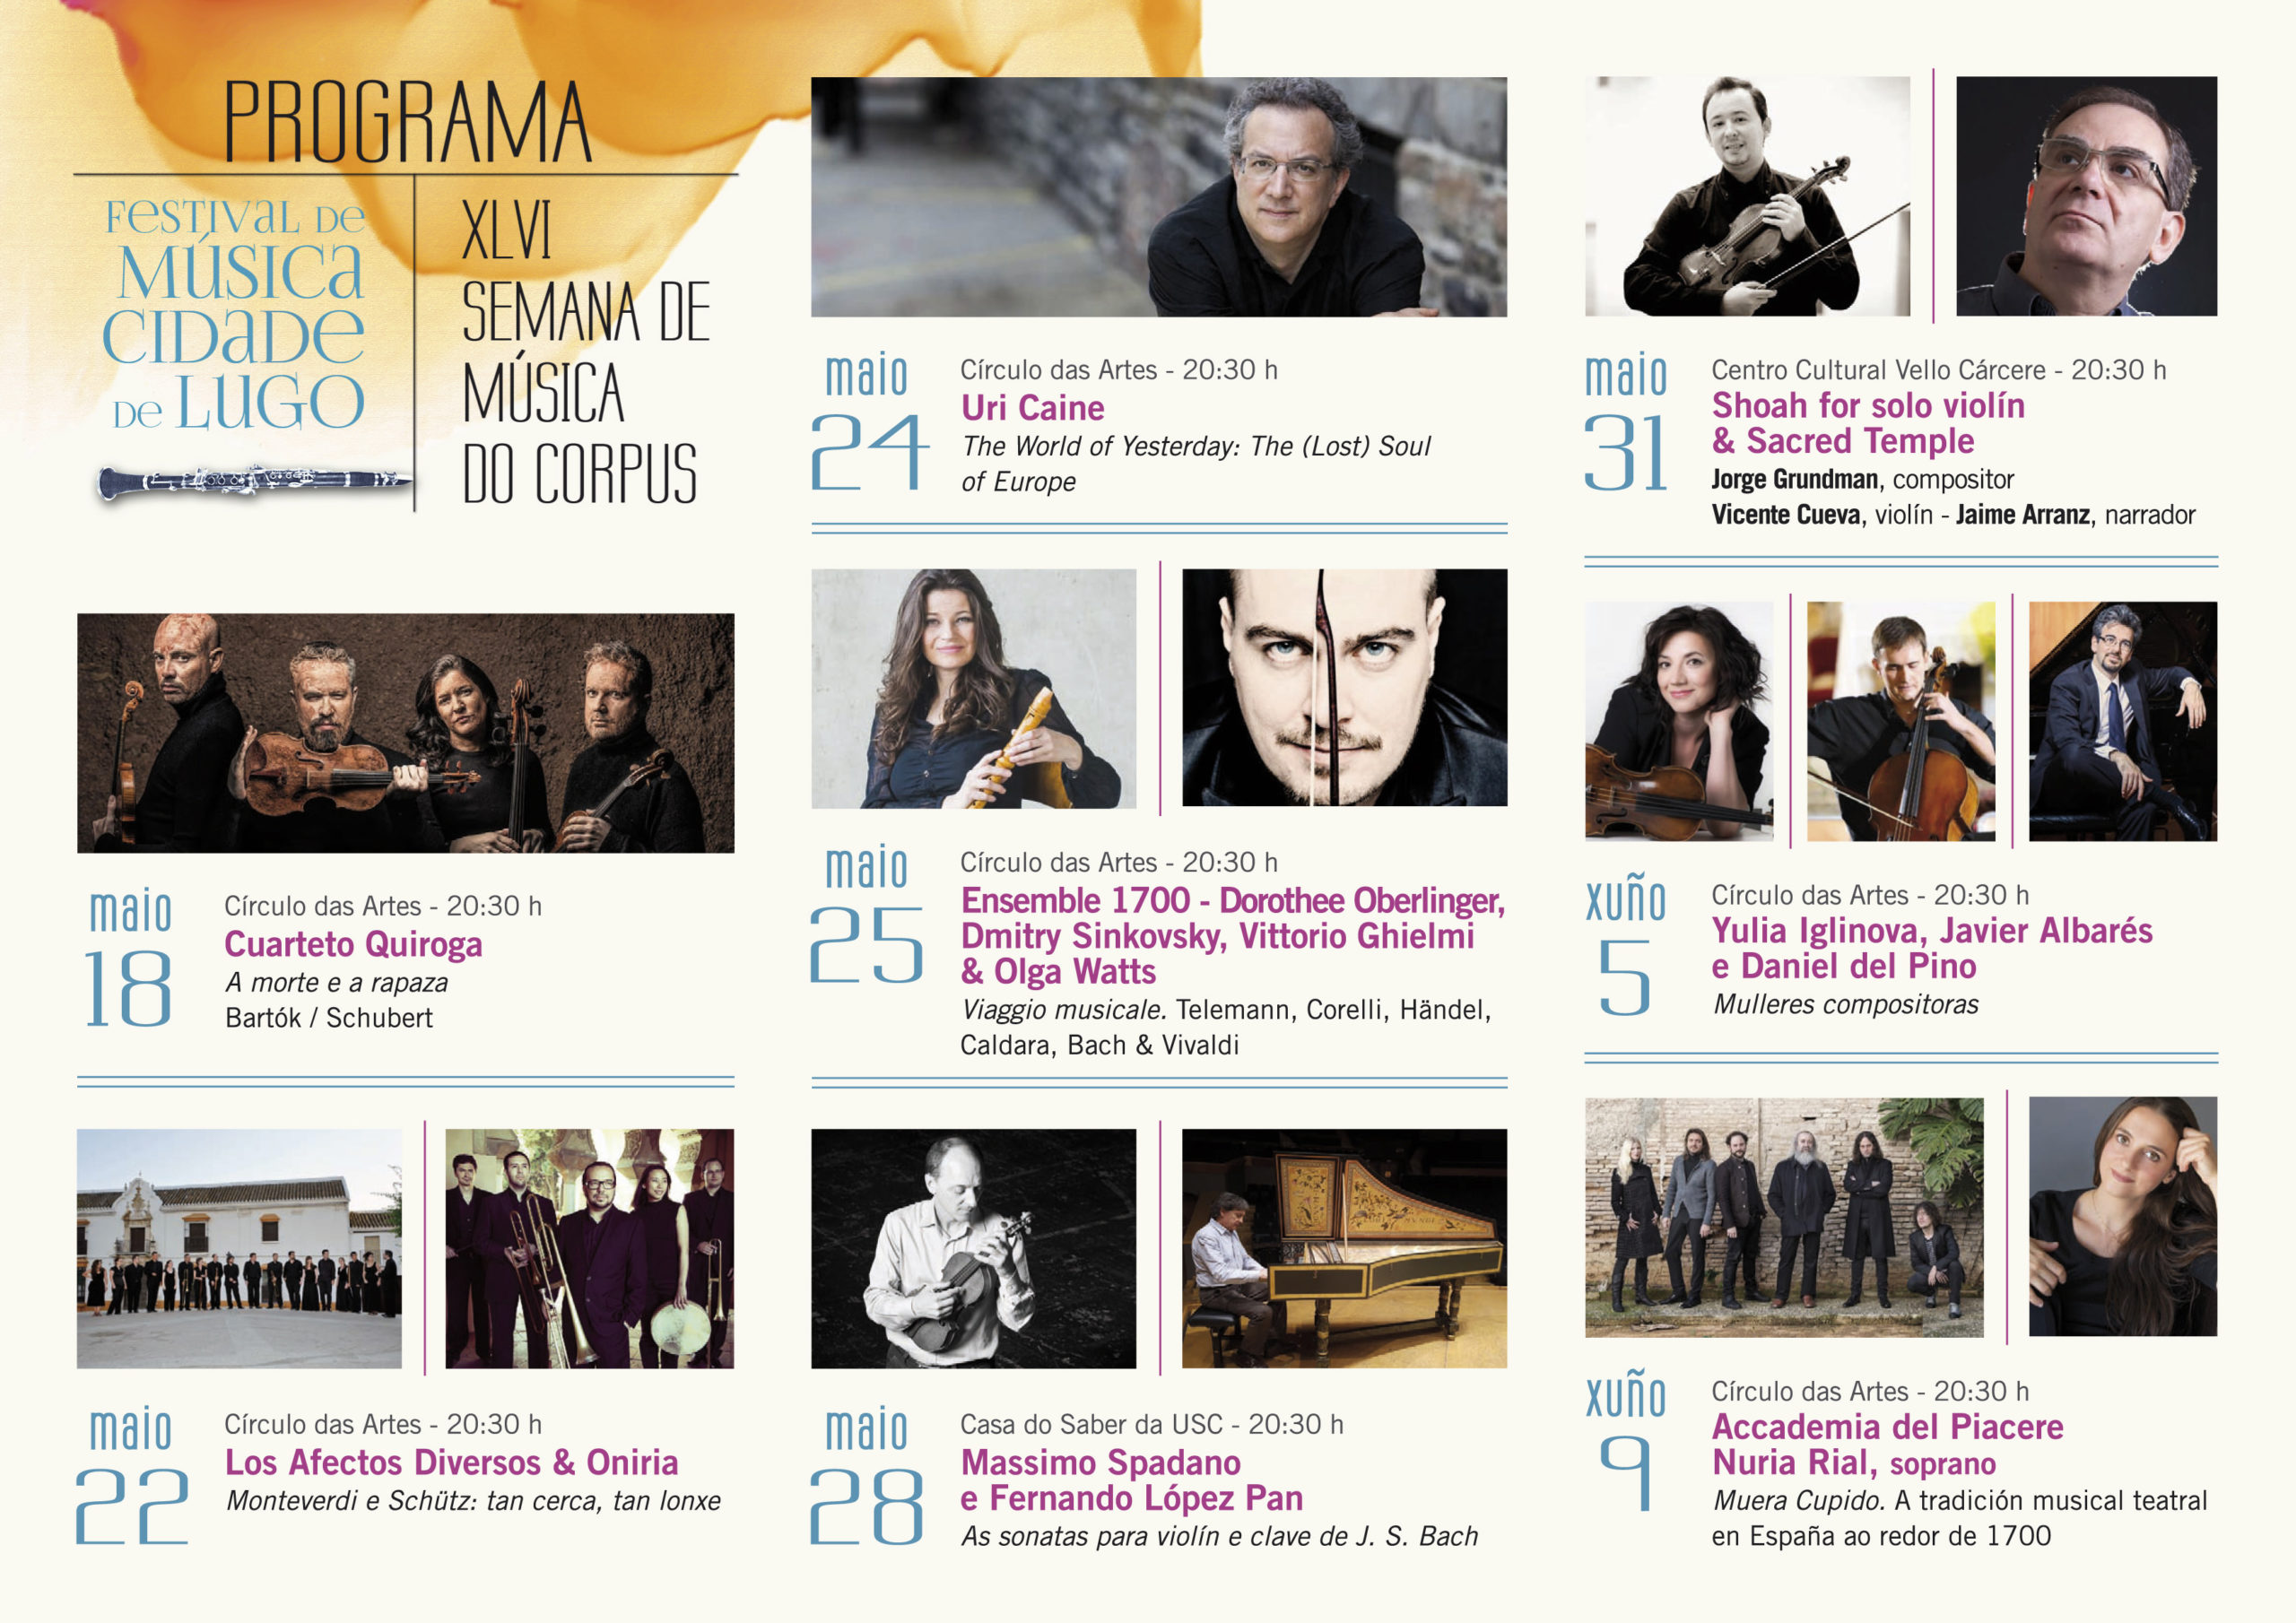 XLVI Semana de Música do Corpus: unha celebración dos sons barrocos e clásicos en Lugo